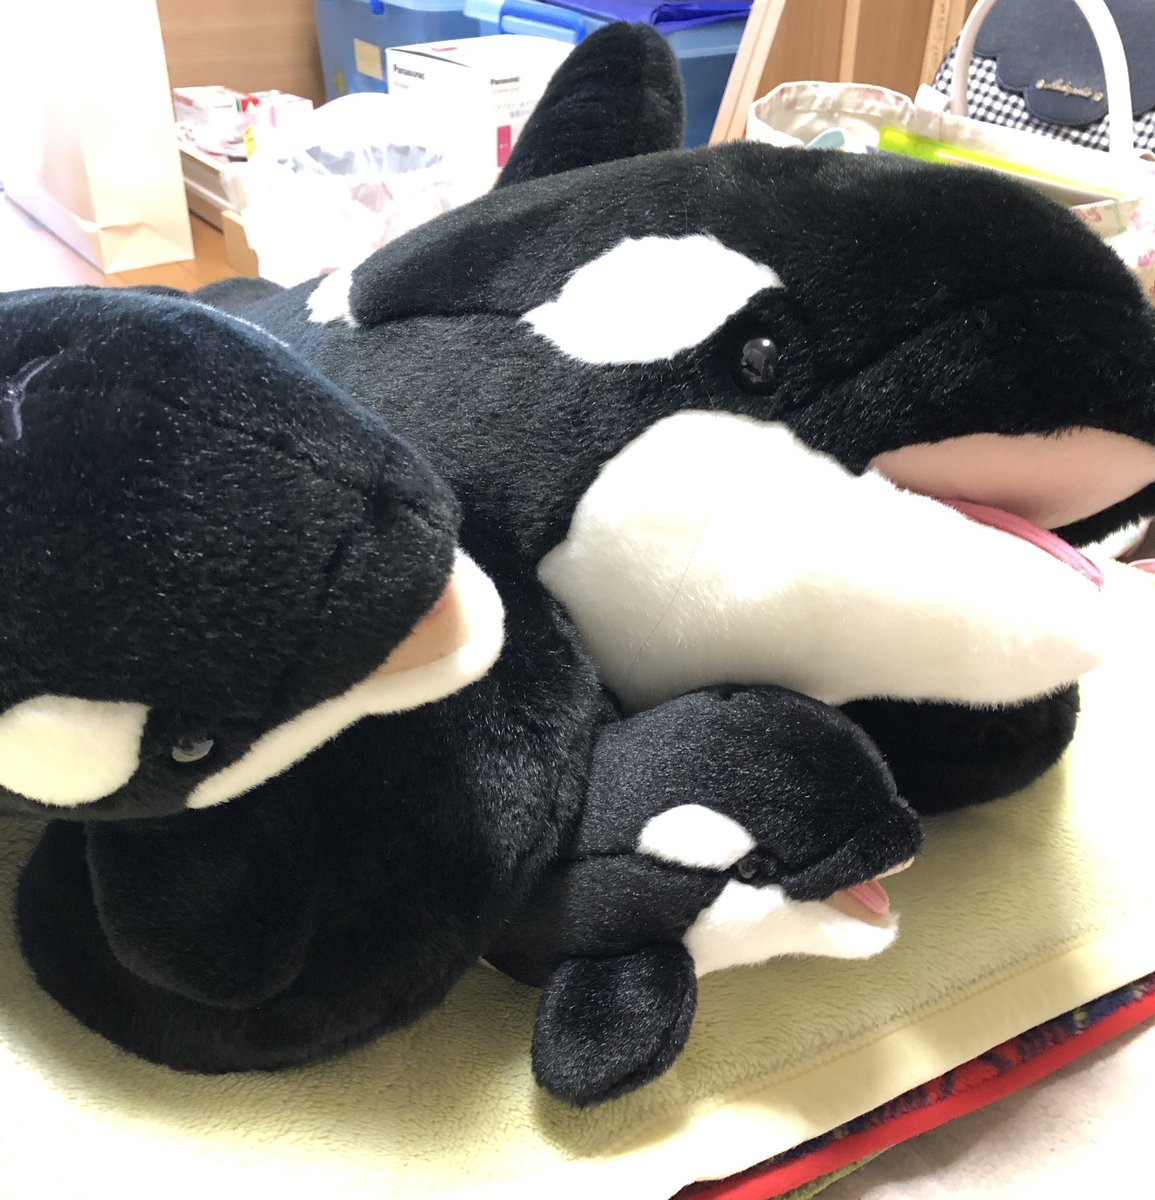 テク テクに狩る 管理人 Kumiffy9350 おはようです 名古屋港水族館へ行った時に姉ちゃんが買ってきた ぬいぐるみです かわいいですよね Twitter